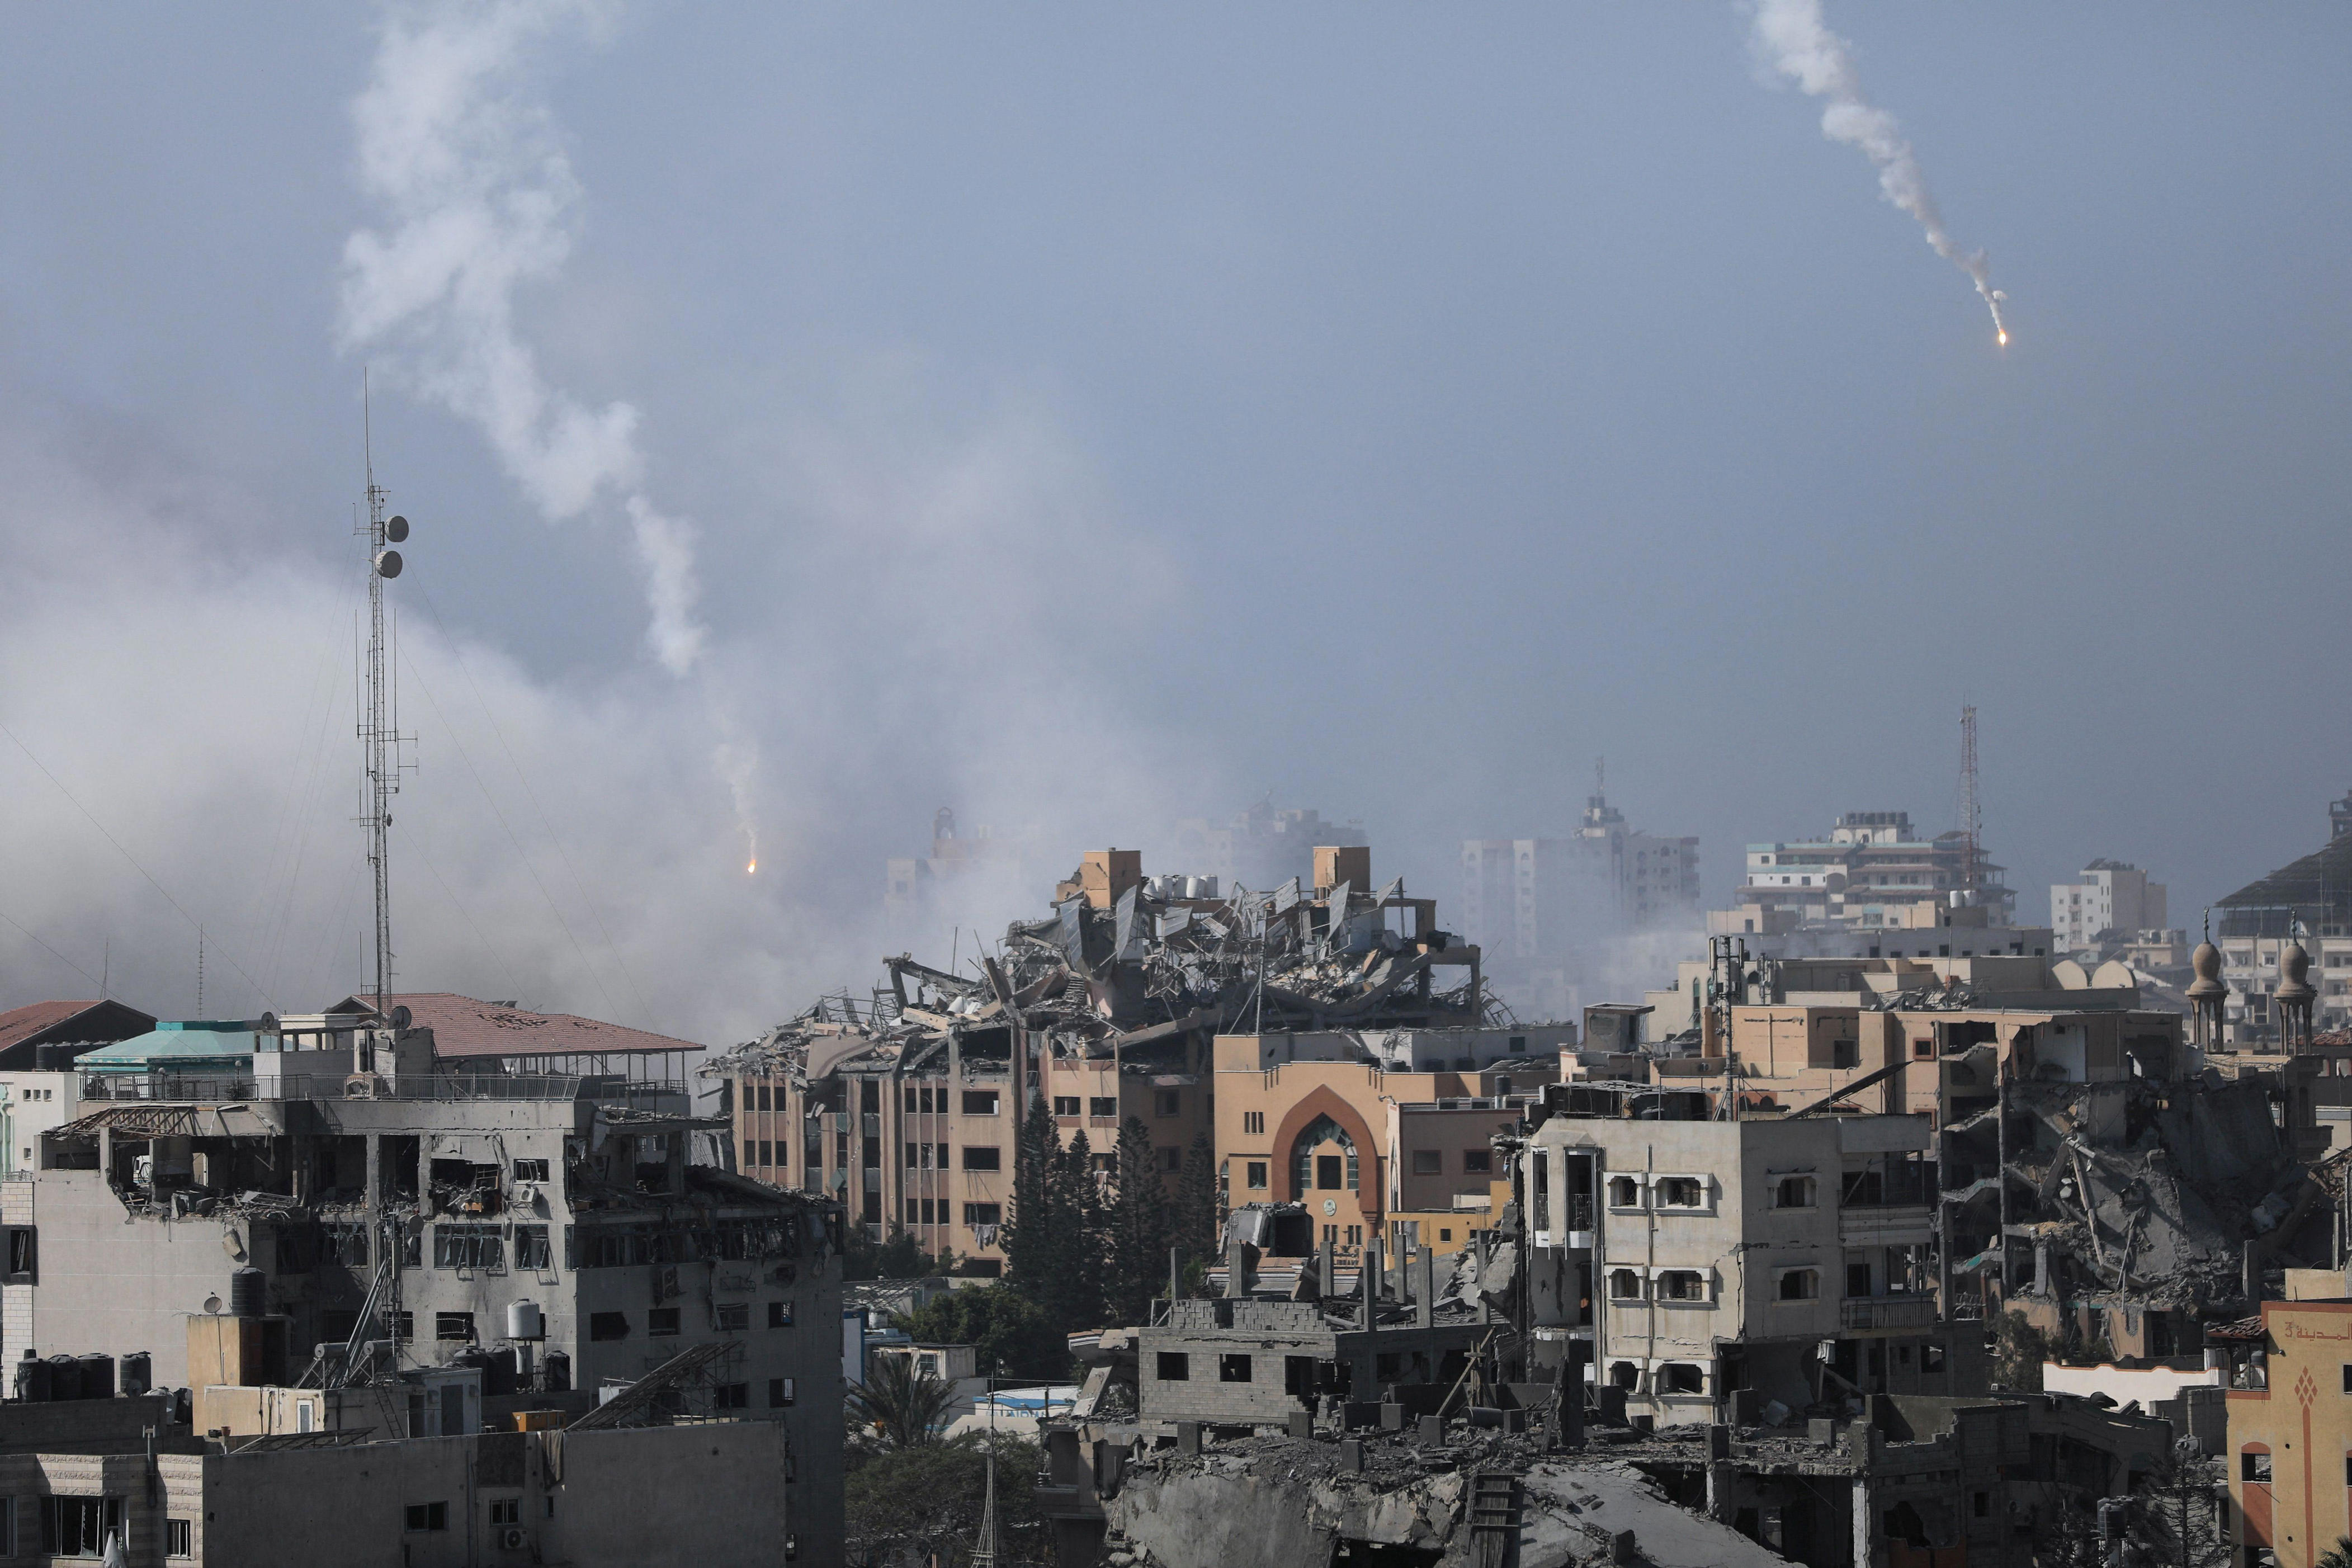 สงครามอิสราเอล-ฮามาส: การเจรจาหยุดยิงรอบใหม่ที่อียิปต์ มีสัญญาณที่ดีหรือไม่ ?